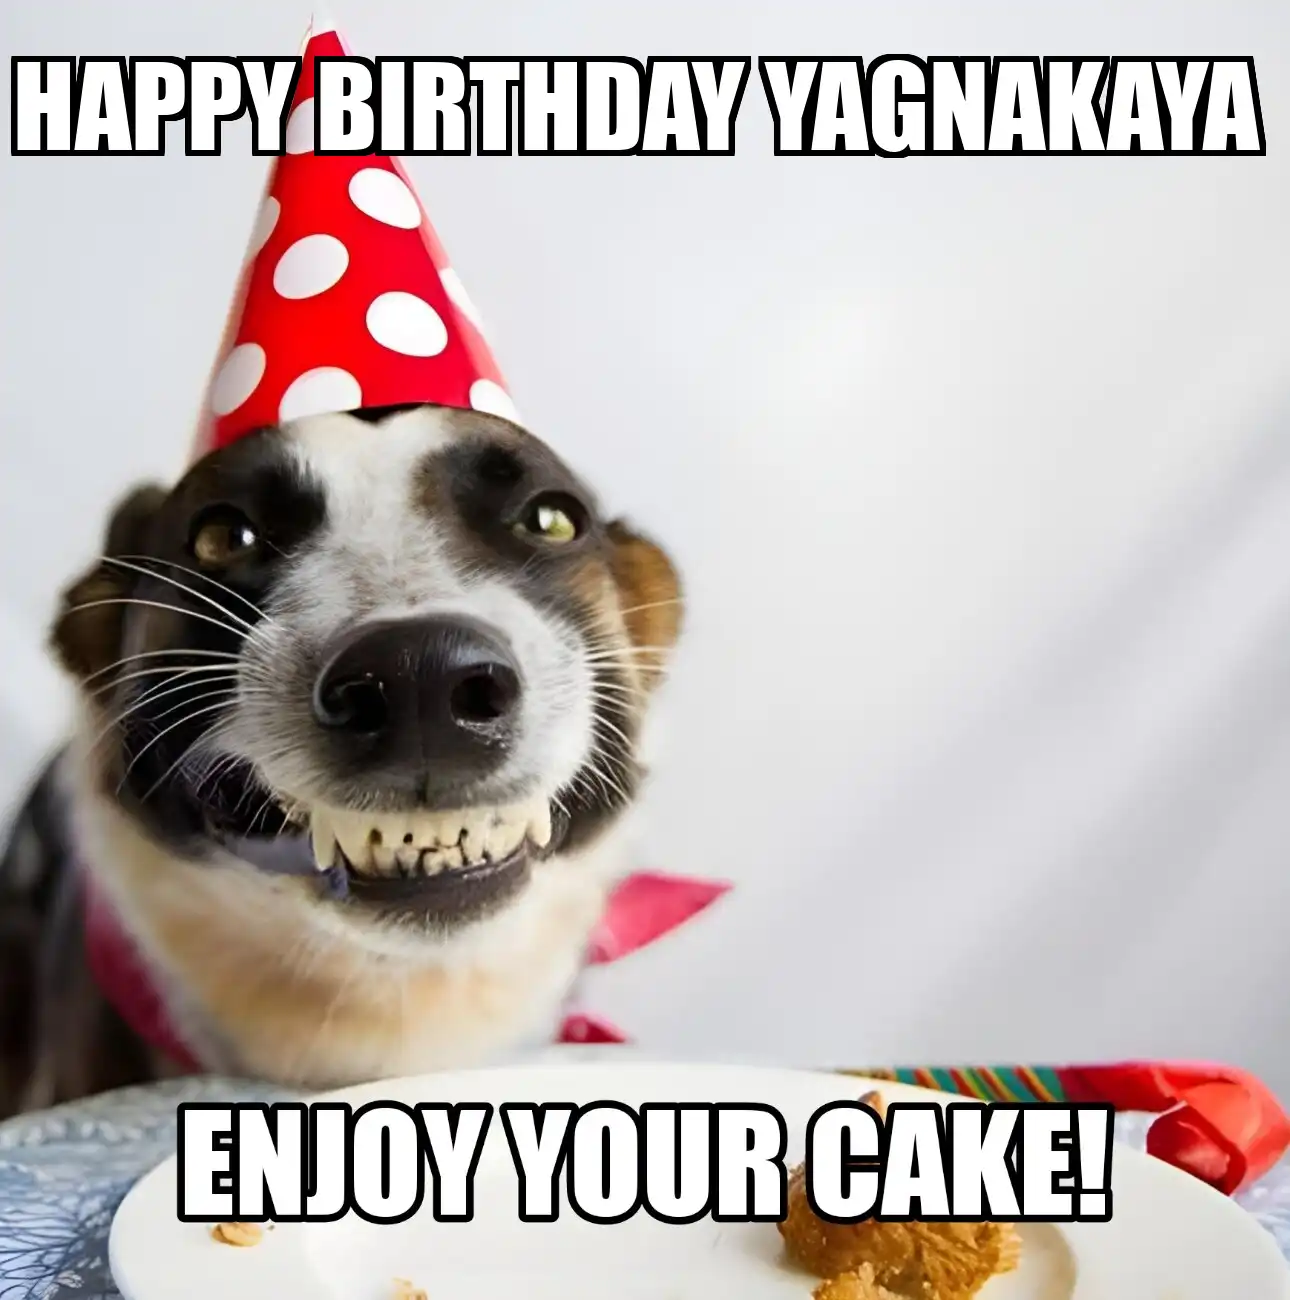 Happy Birthday Yagnakaya Enjoy Your Cake Dog Meme